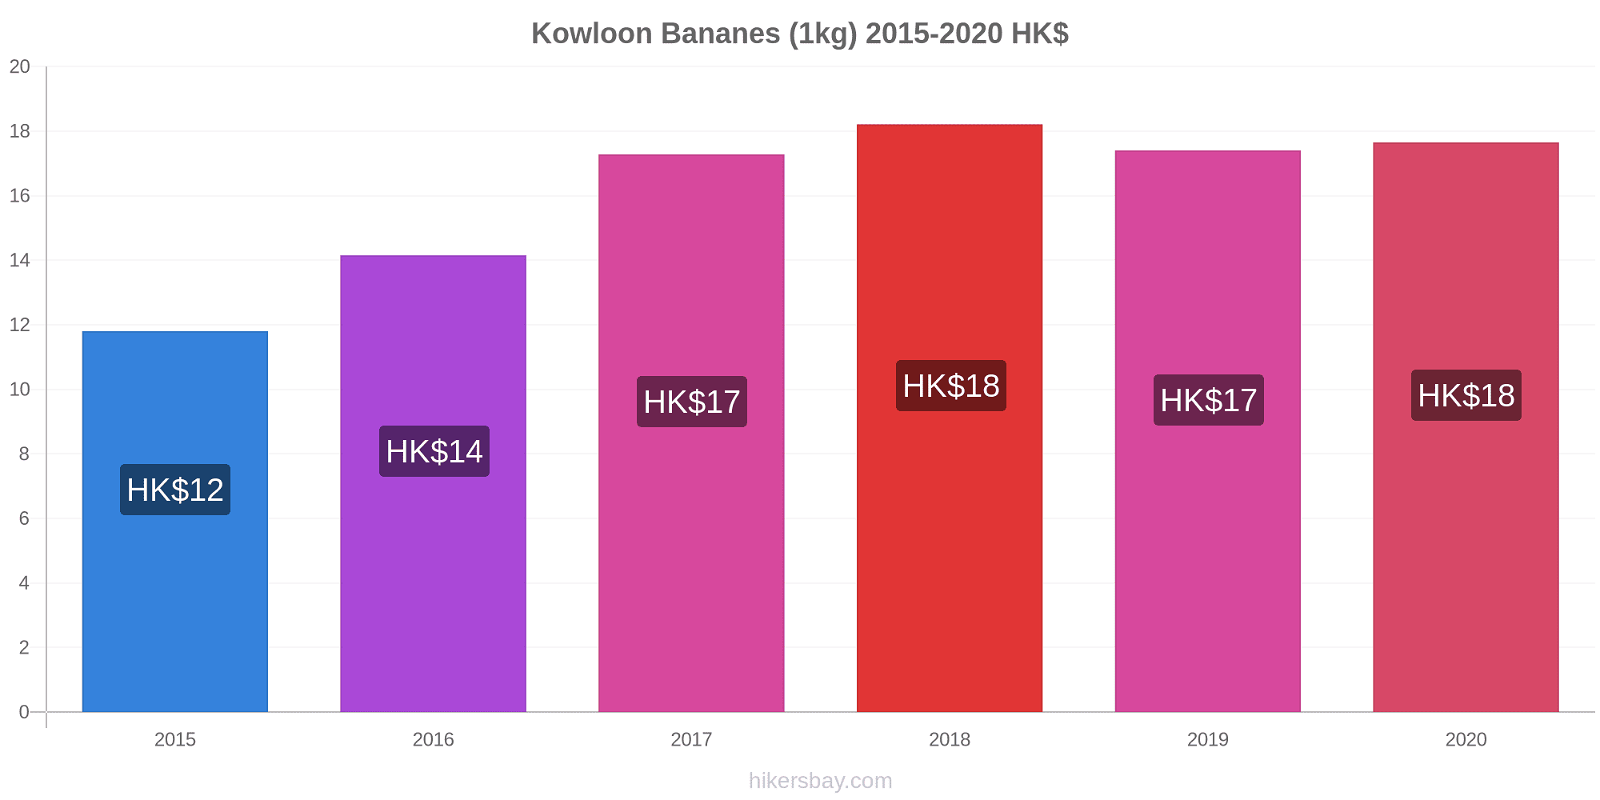 Kowloon changements de prix Bananes (1kg) hikersbay.com